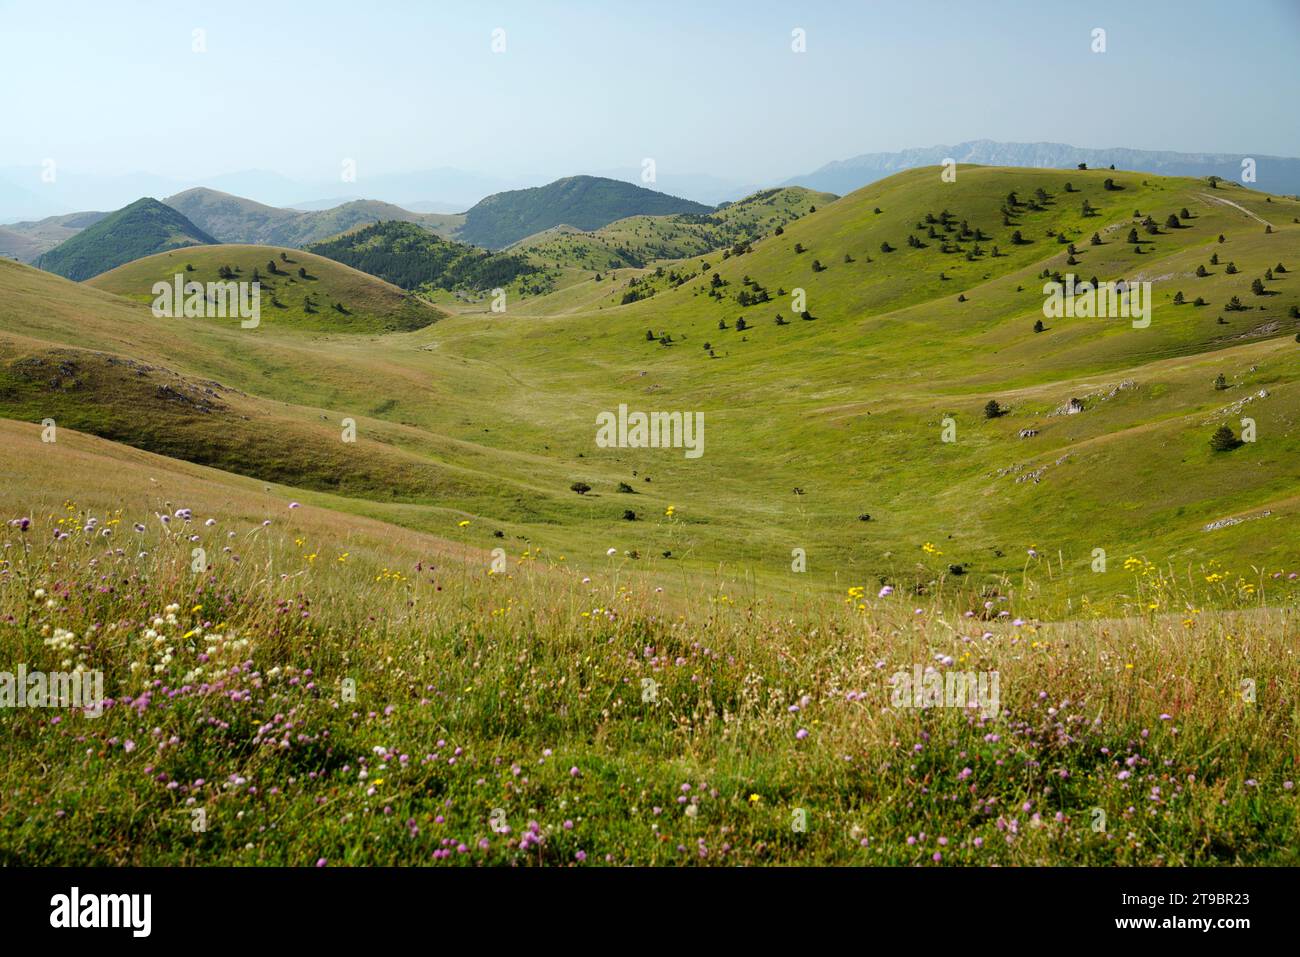 Litlle Tibet,Gran Sasso and Monti della Laga National Park,provinces of Teramo, L'Aquila, Pescara, Abruzzo region, Italy Stock Photo